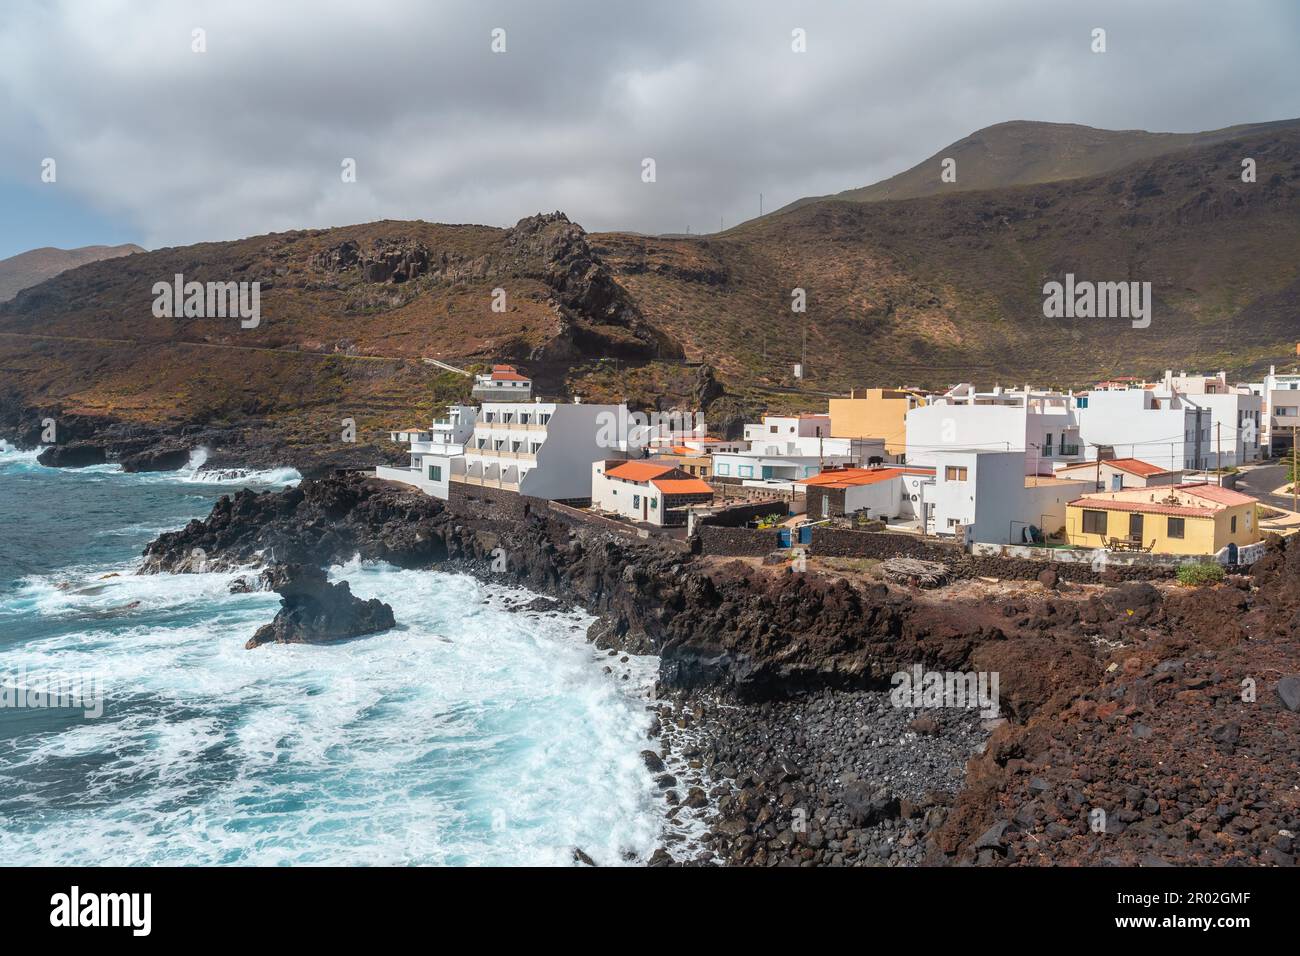 La ville de Tamaduste située sur la côte de l'île d'El Hierro, îles Canaries, Espagne Banque D'Images